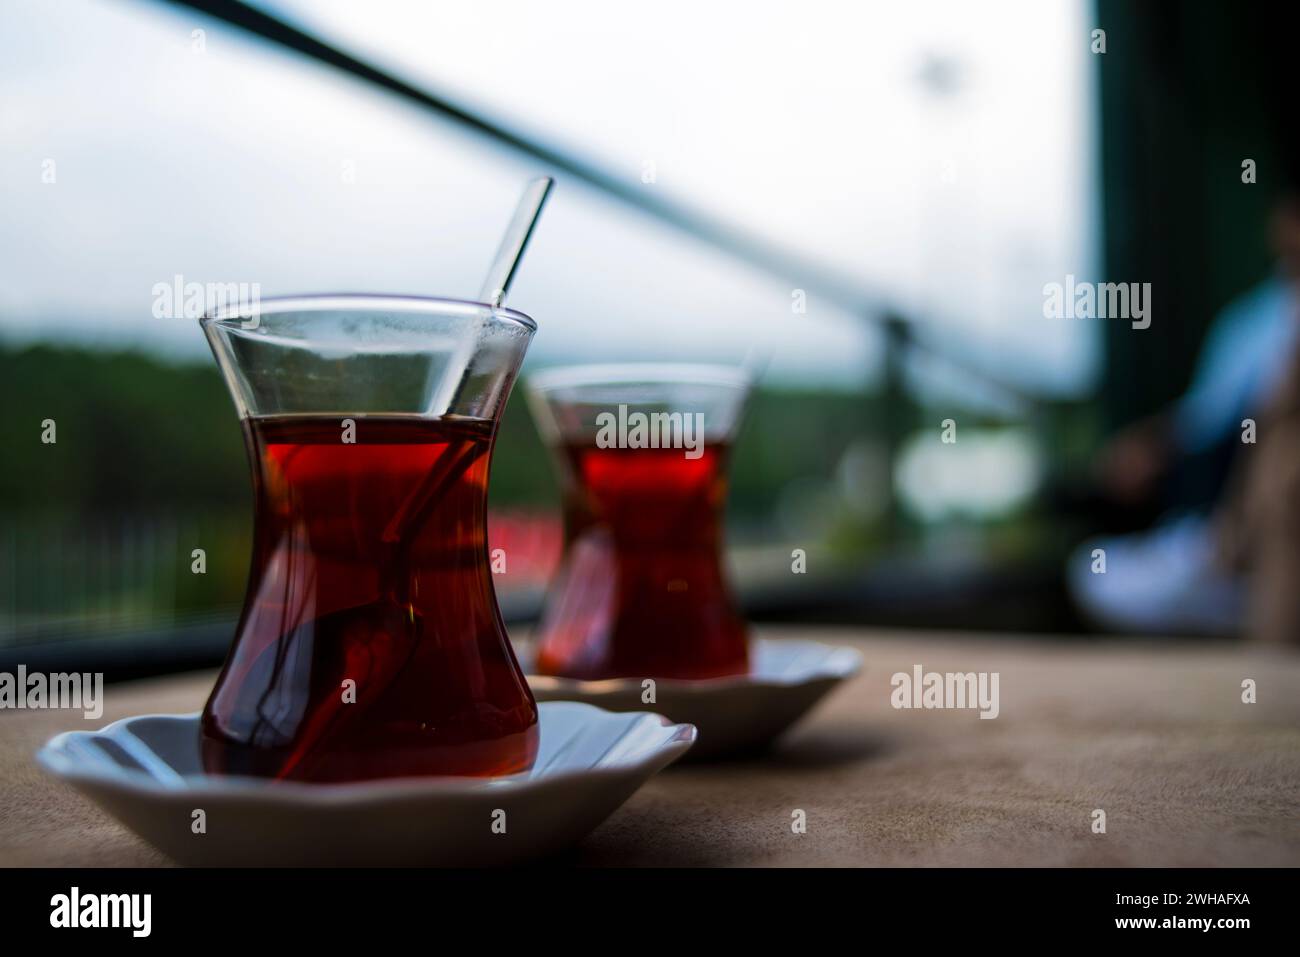 Deux tasses à thé turques, un duo chaleureux et aromatique, capturant l'essence de la culture du thé turc et de l'hospitalité dans un cadre confortable et traditionnel. Banque D'Images